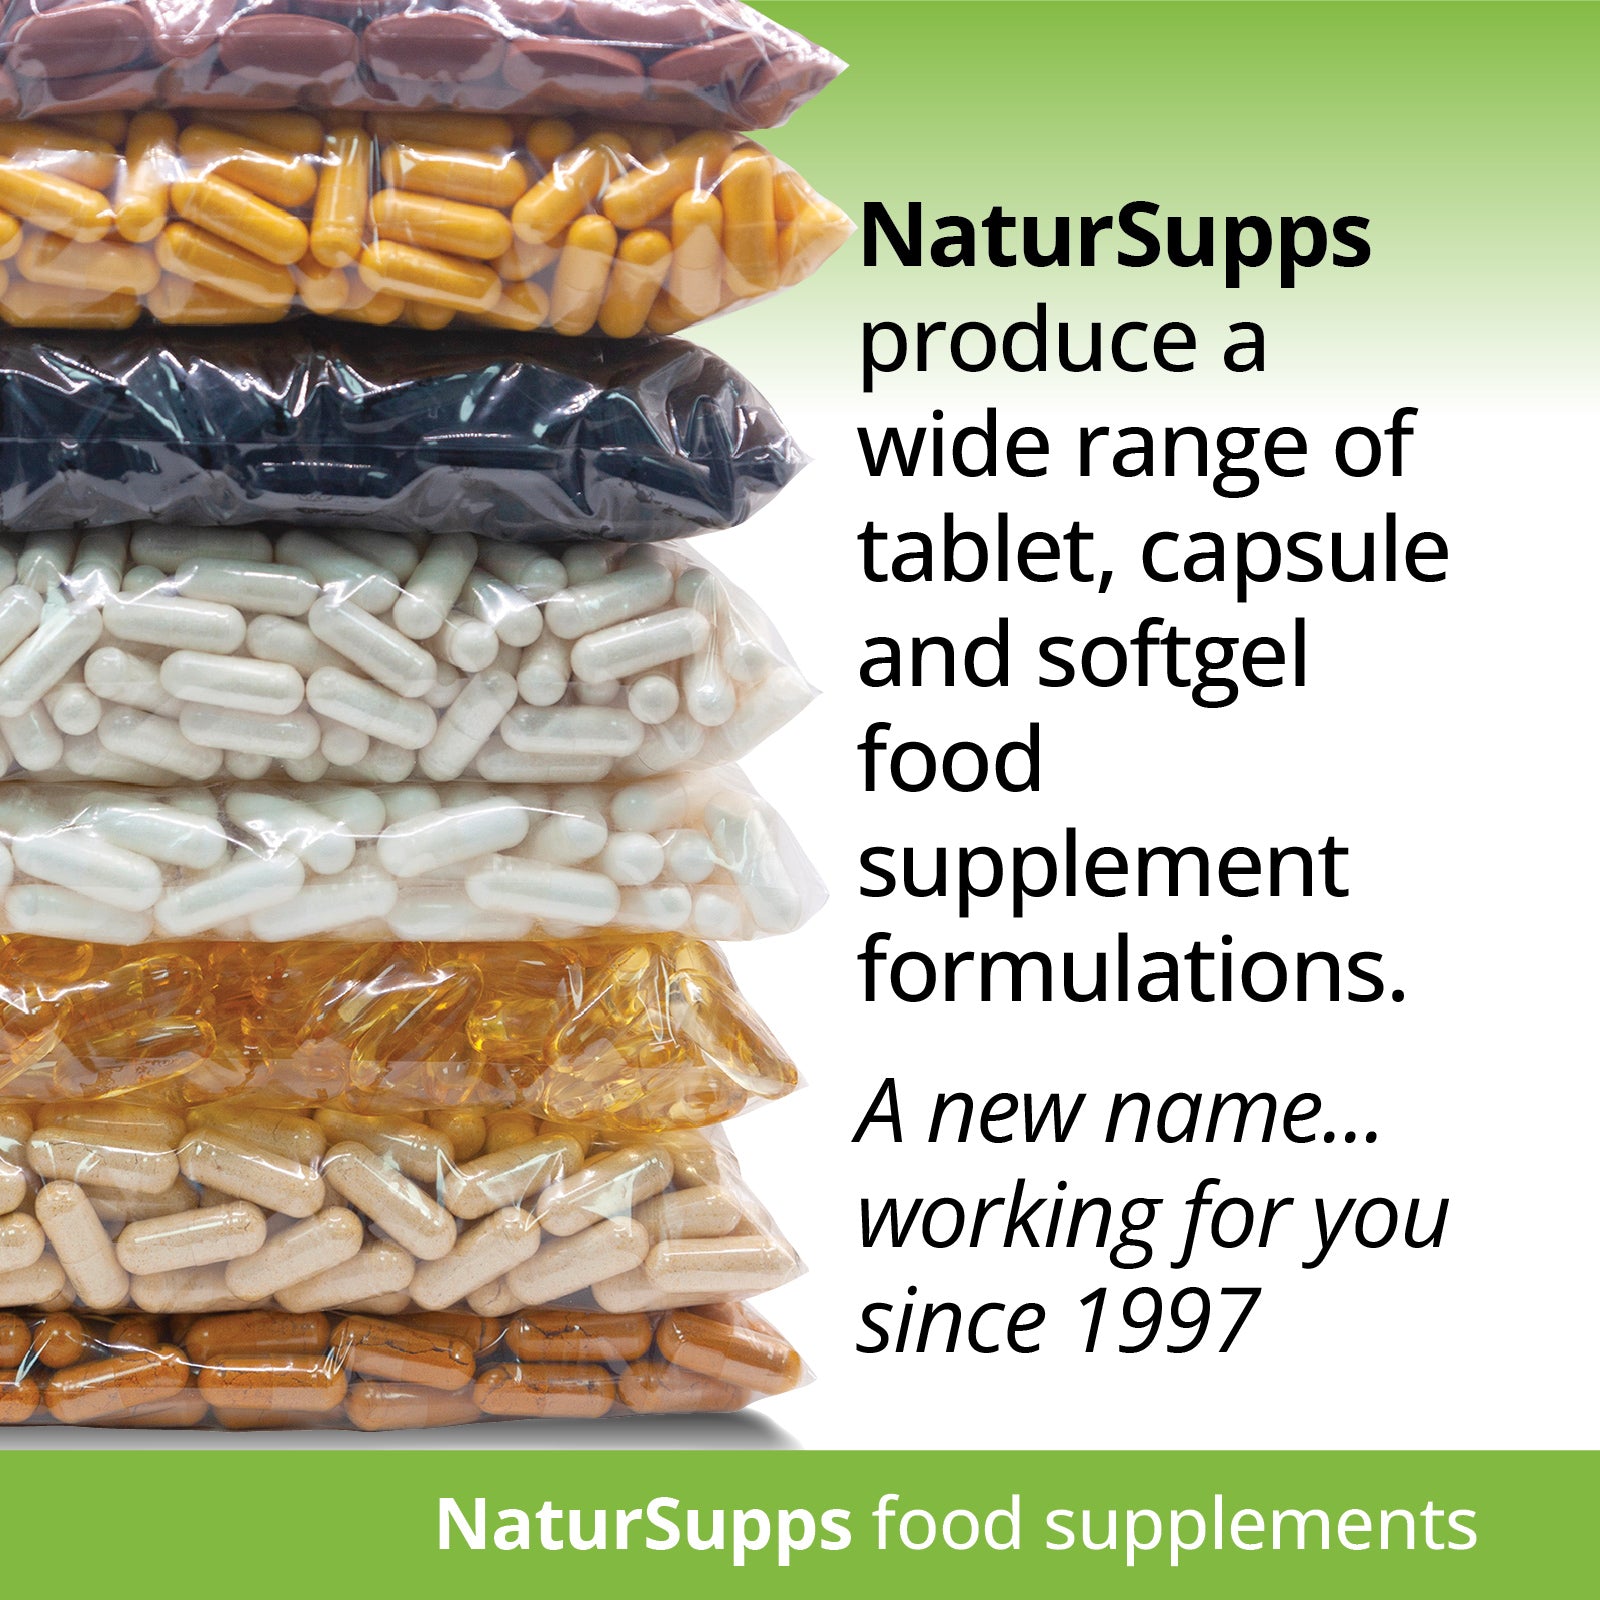 Vitamin D3 4000 iu Liquid Capsules, Vitamin D Supplements for Bones, Muscle Function & Immune System